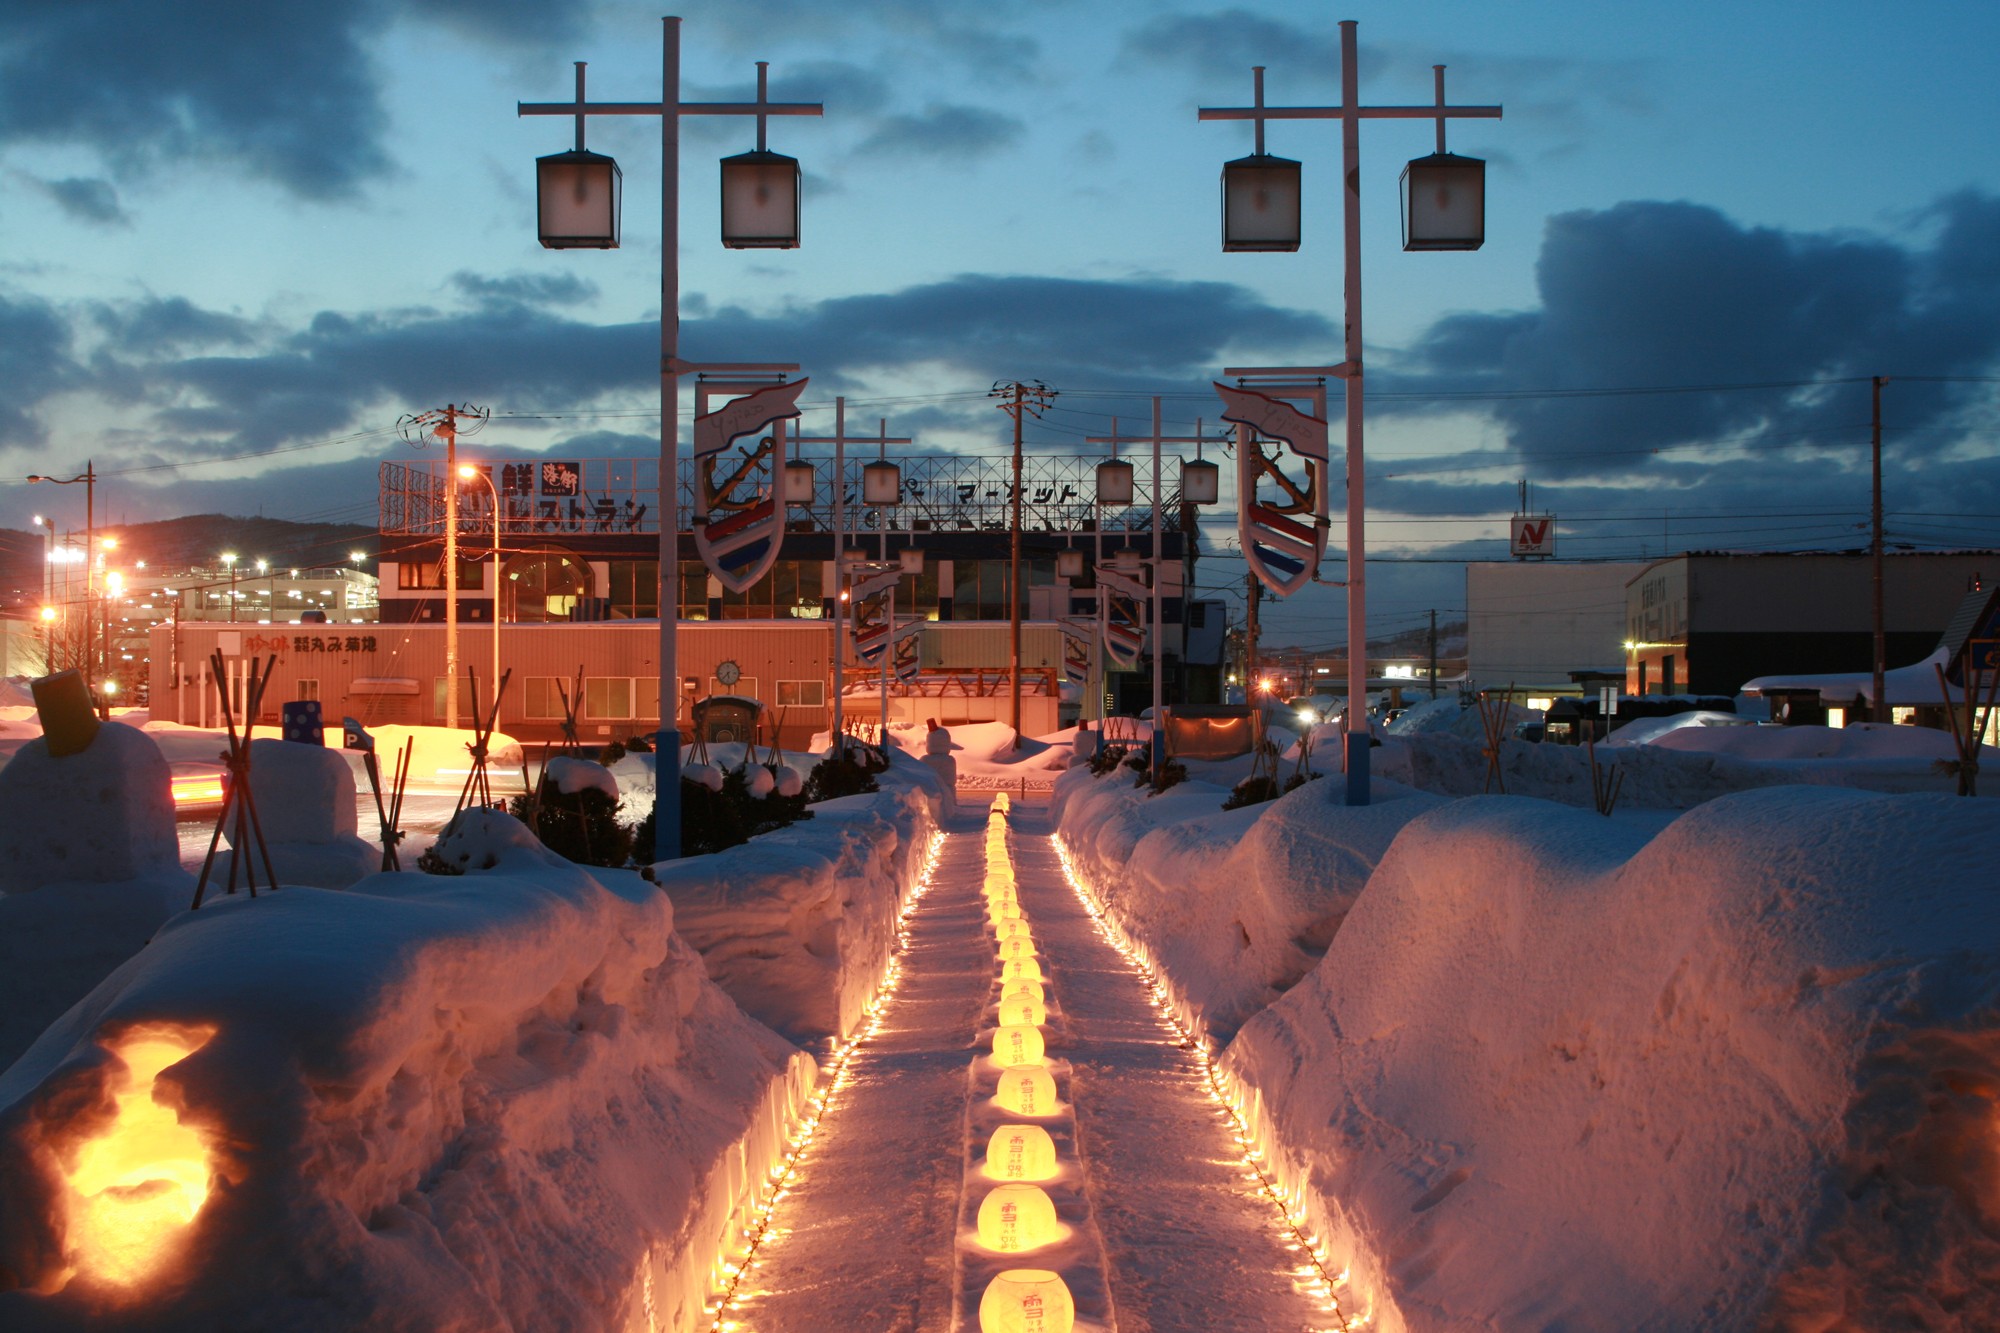 日本北海道 北海道獨有冬季風情 小樽雪燈之路